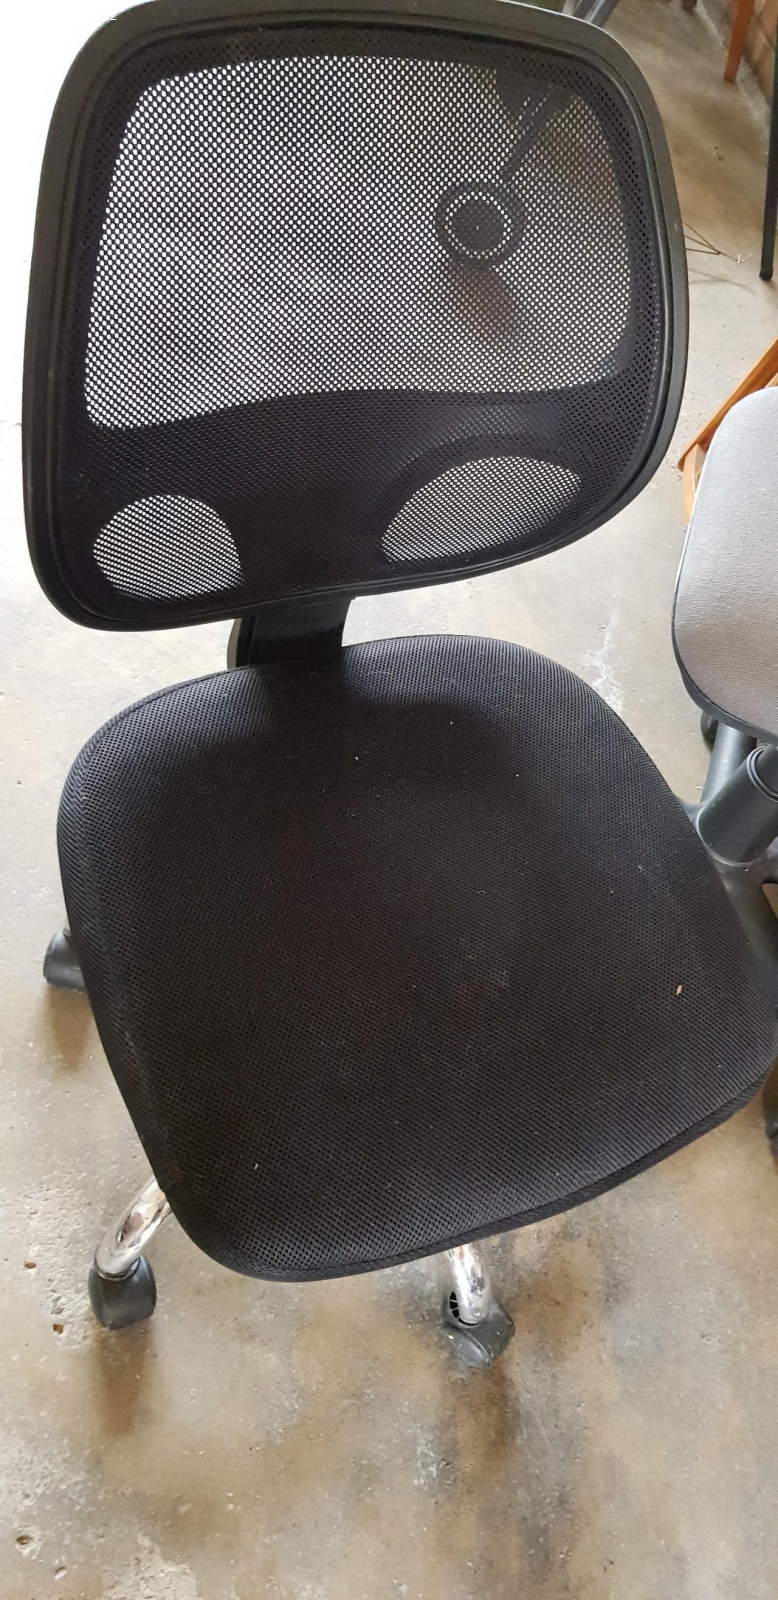 daruji dvě židle kolečkové.. židle funkční, jen větší černá židle nedrží zvýšený stav,po vyzvednutí  spadne dolů. Třeba lze opravit. A u menší šedivé židle nejde posunout dolů.